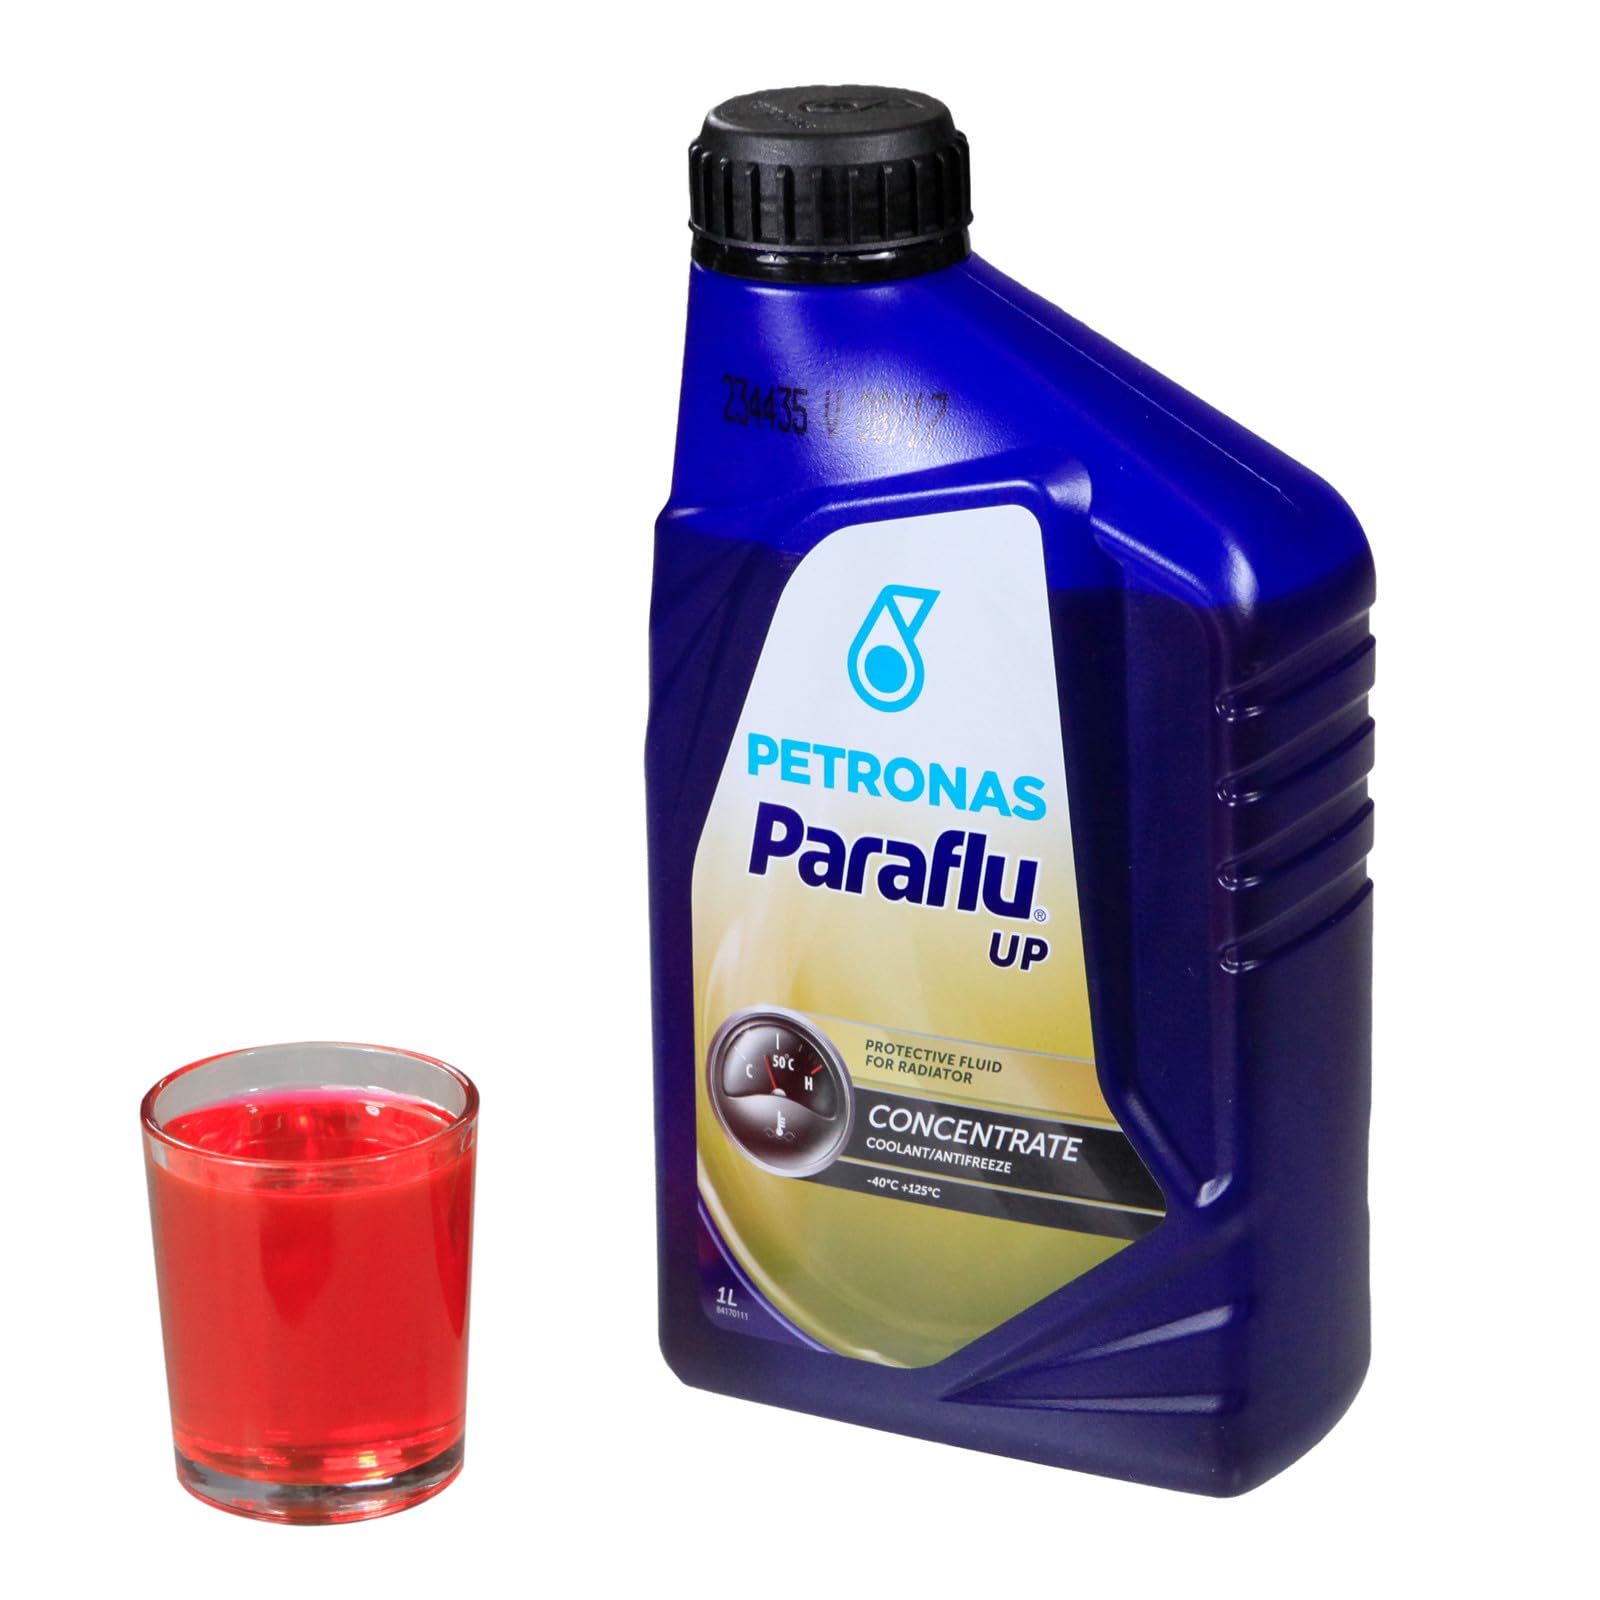 Paraflu UP Kühlerfrostschutz / 1-Liter-Dose von Petronas